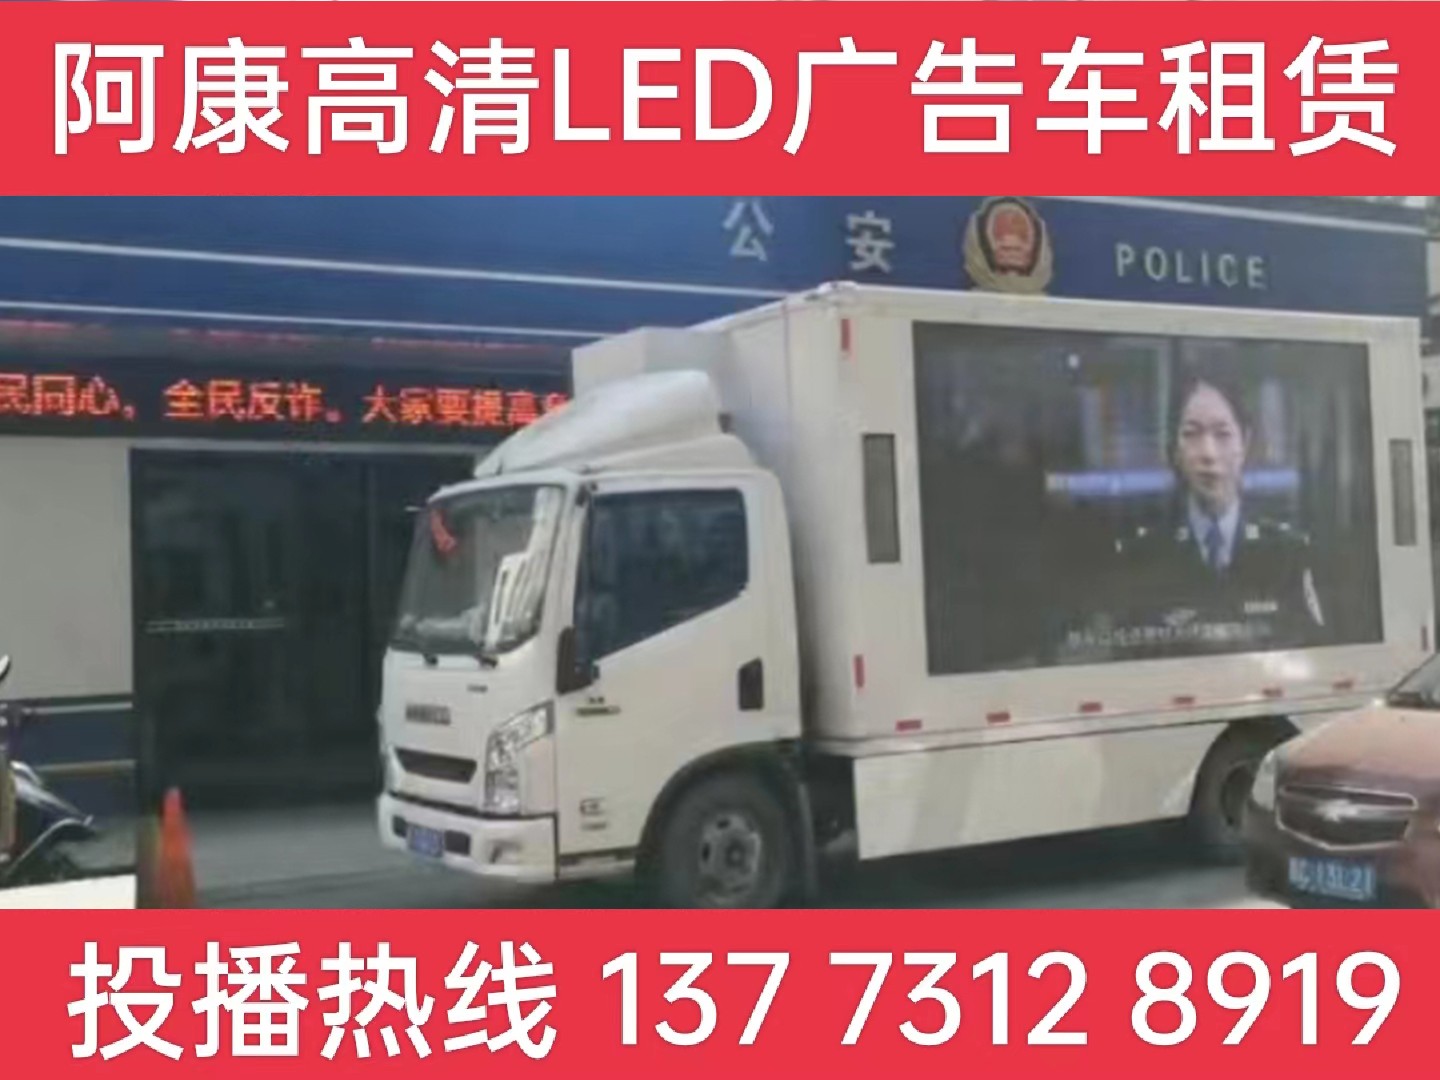 兴化LED广告车租赁-反诈宣传